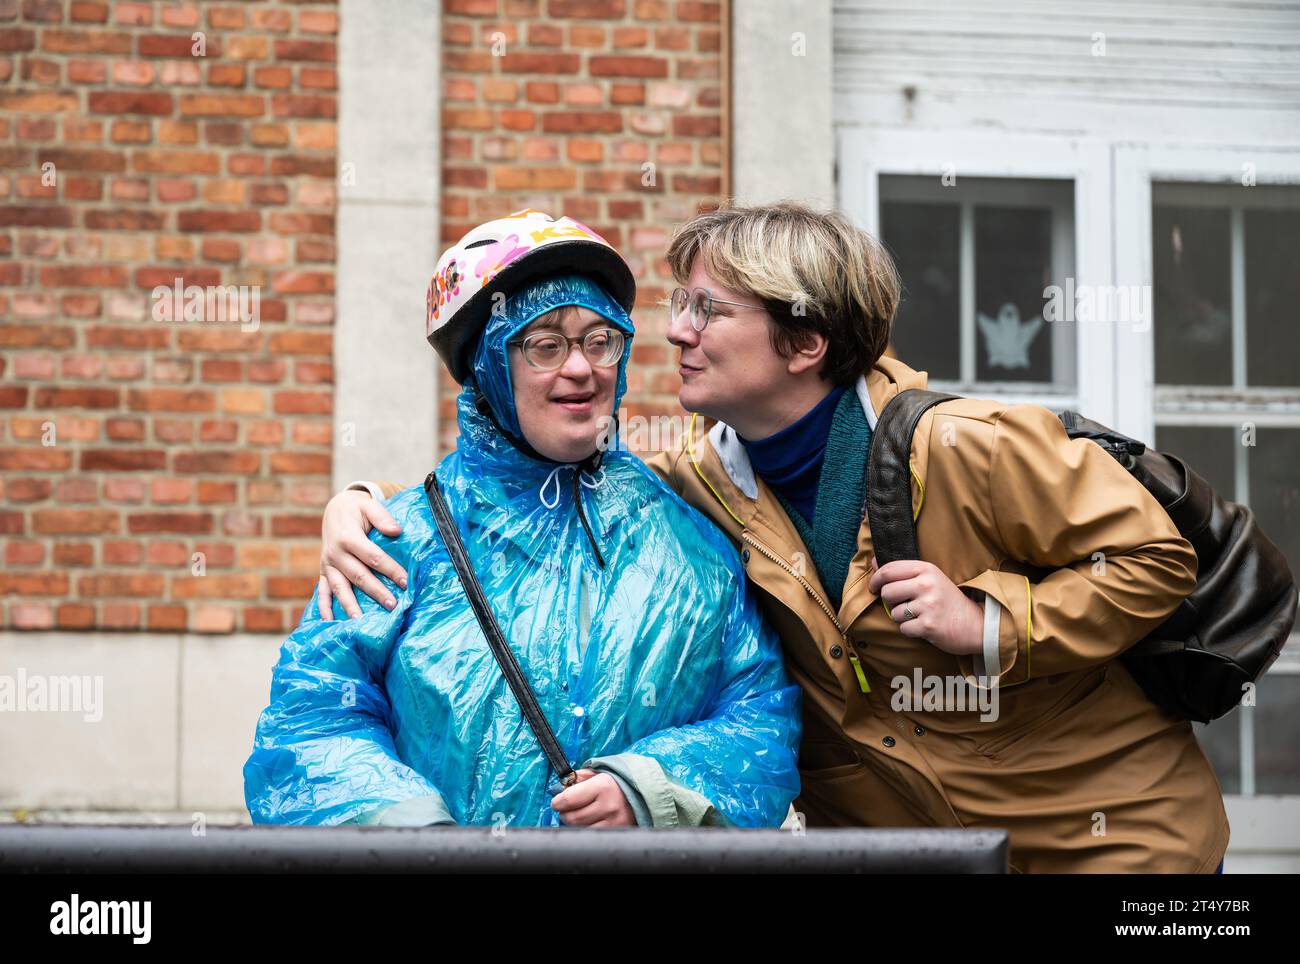 Glücklicher Moment zwischen 41 Jährigen mit einem blauen Regenponcho mit dem Down-Syndrom und ihrem 37 Jährigen Freund Tienen, Flandern, Belgien Stockfoto